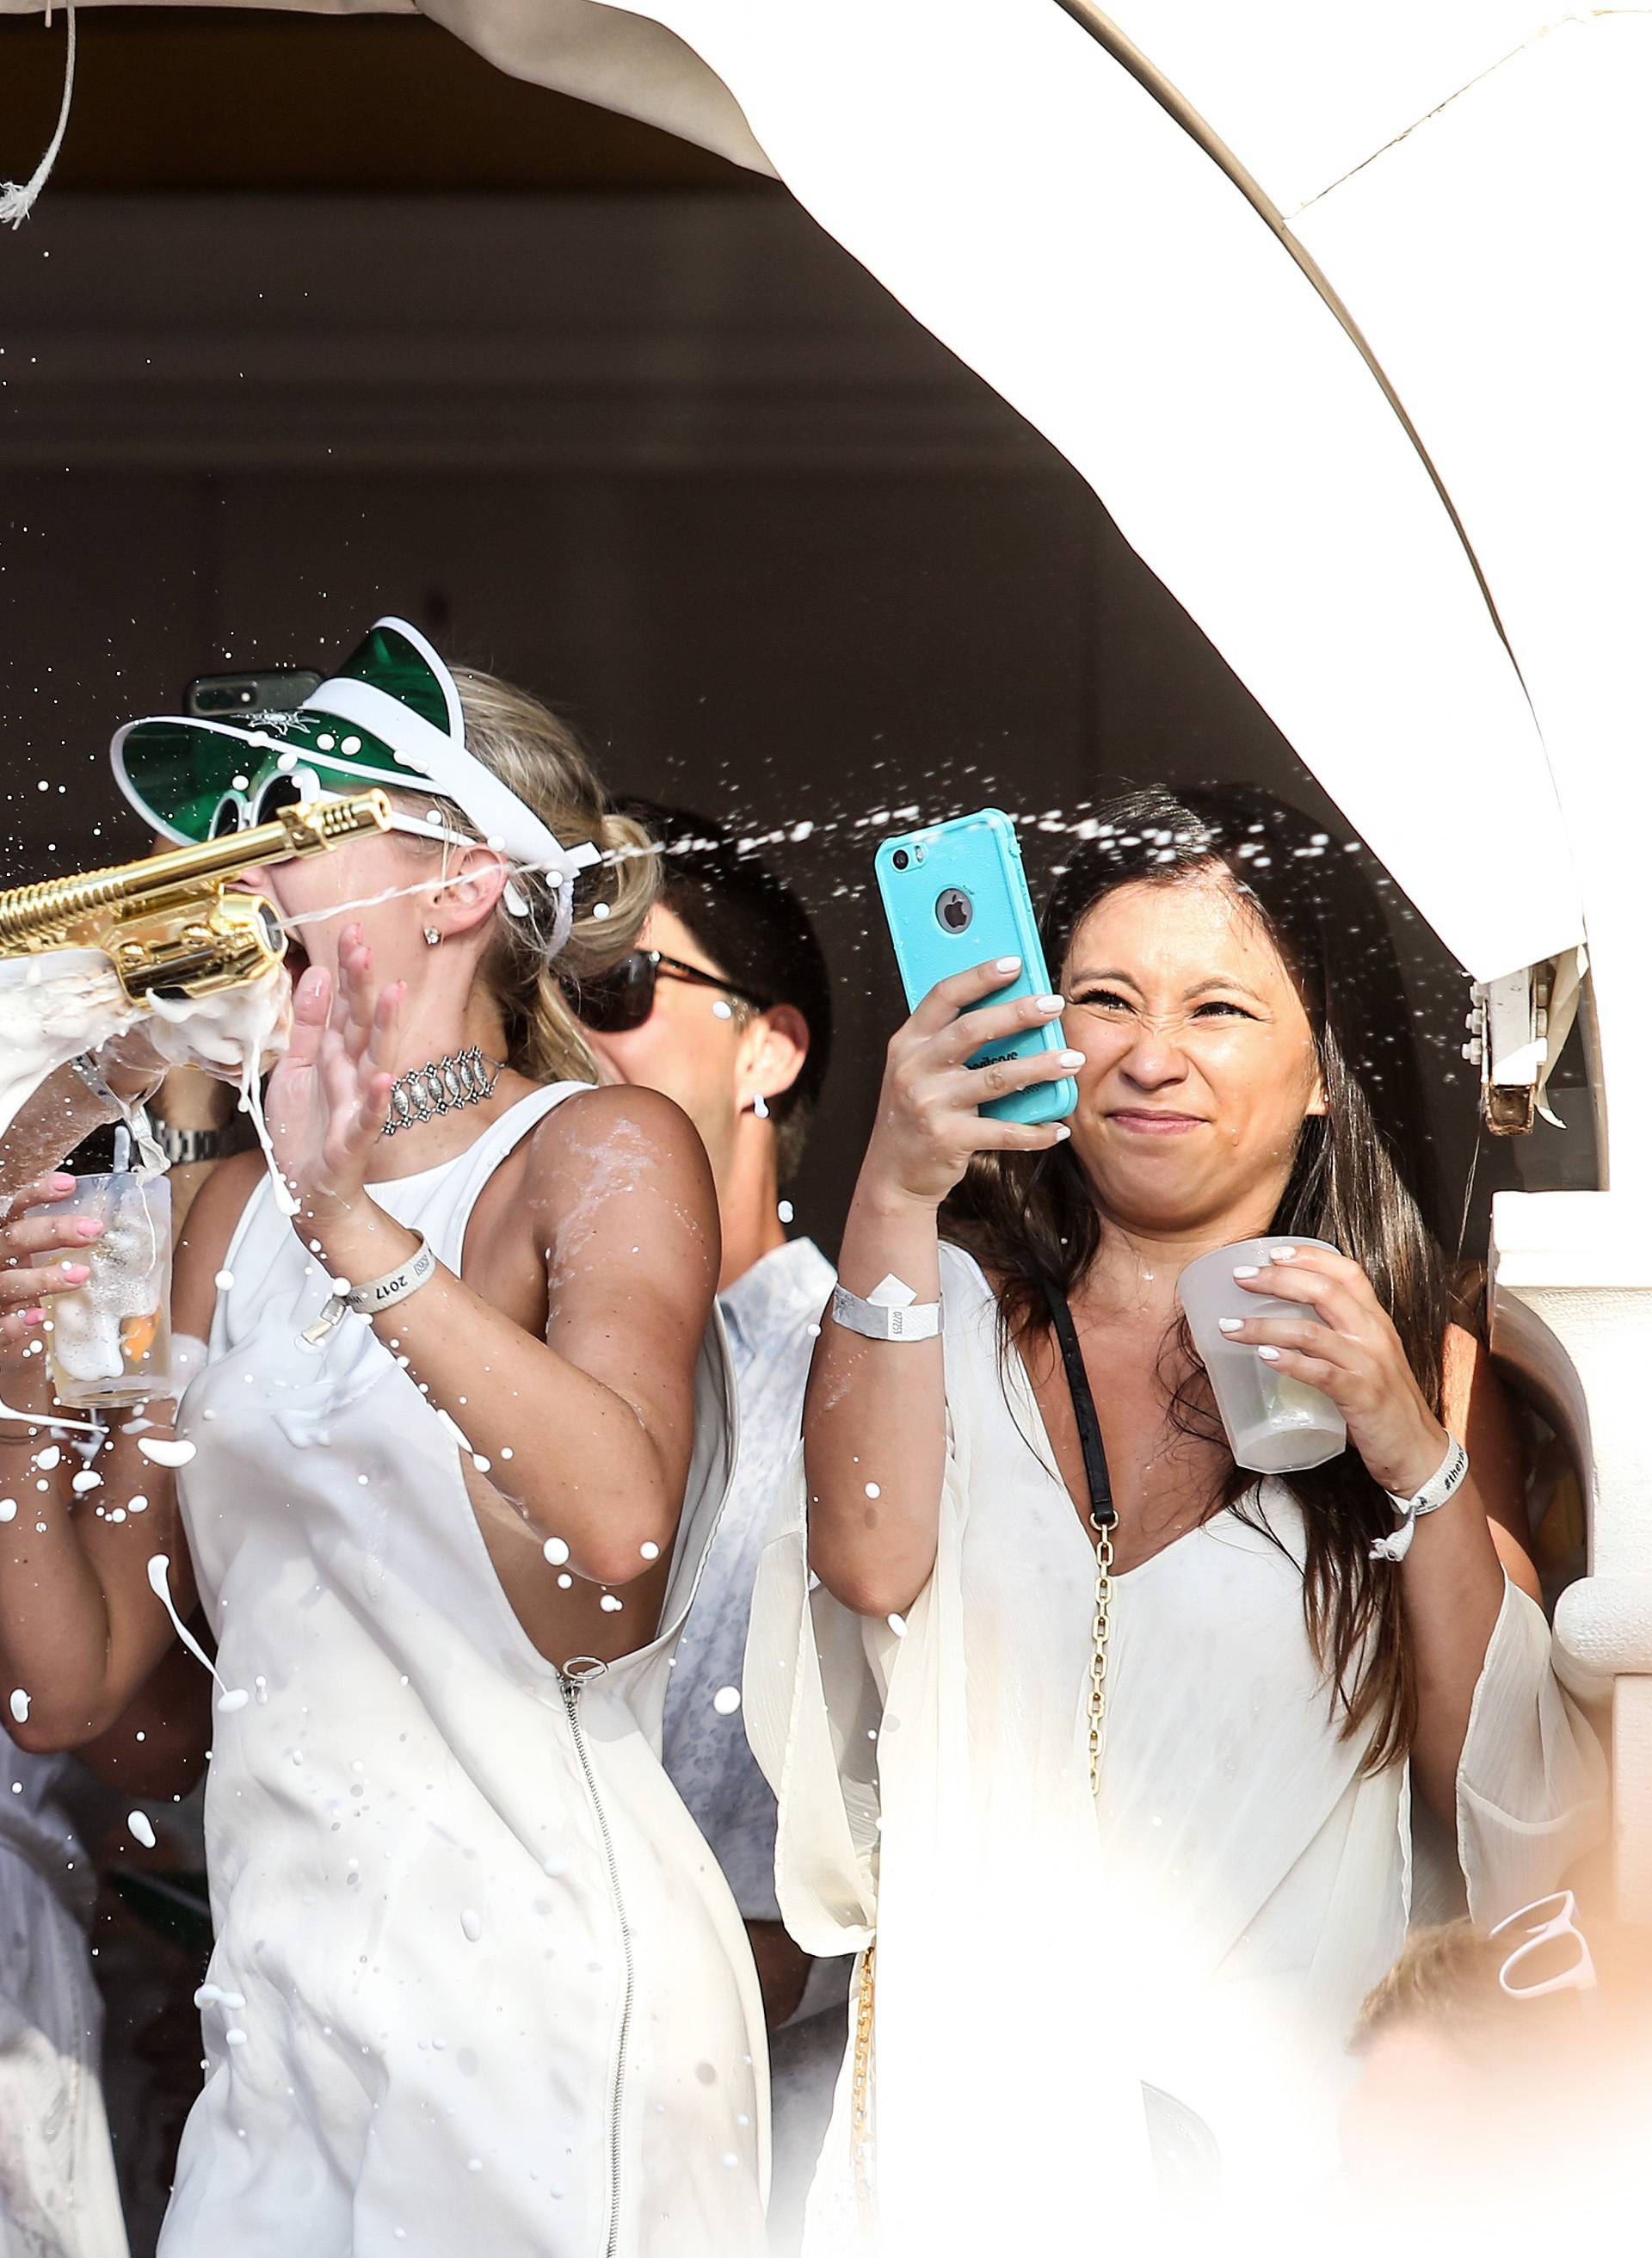 Razuzdana zabava na Hvaru: Gole grudi i potoci šampanjca